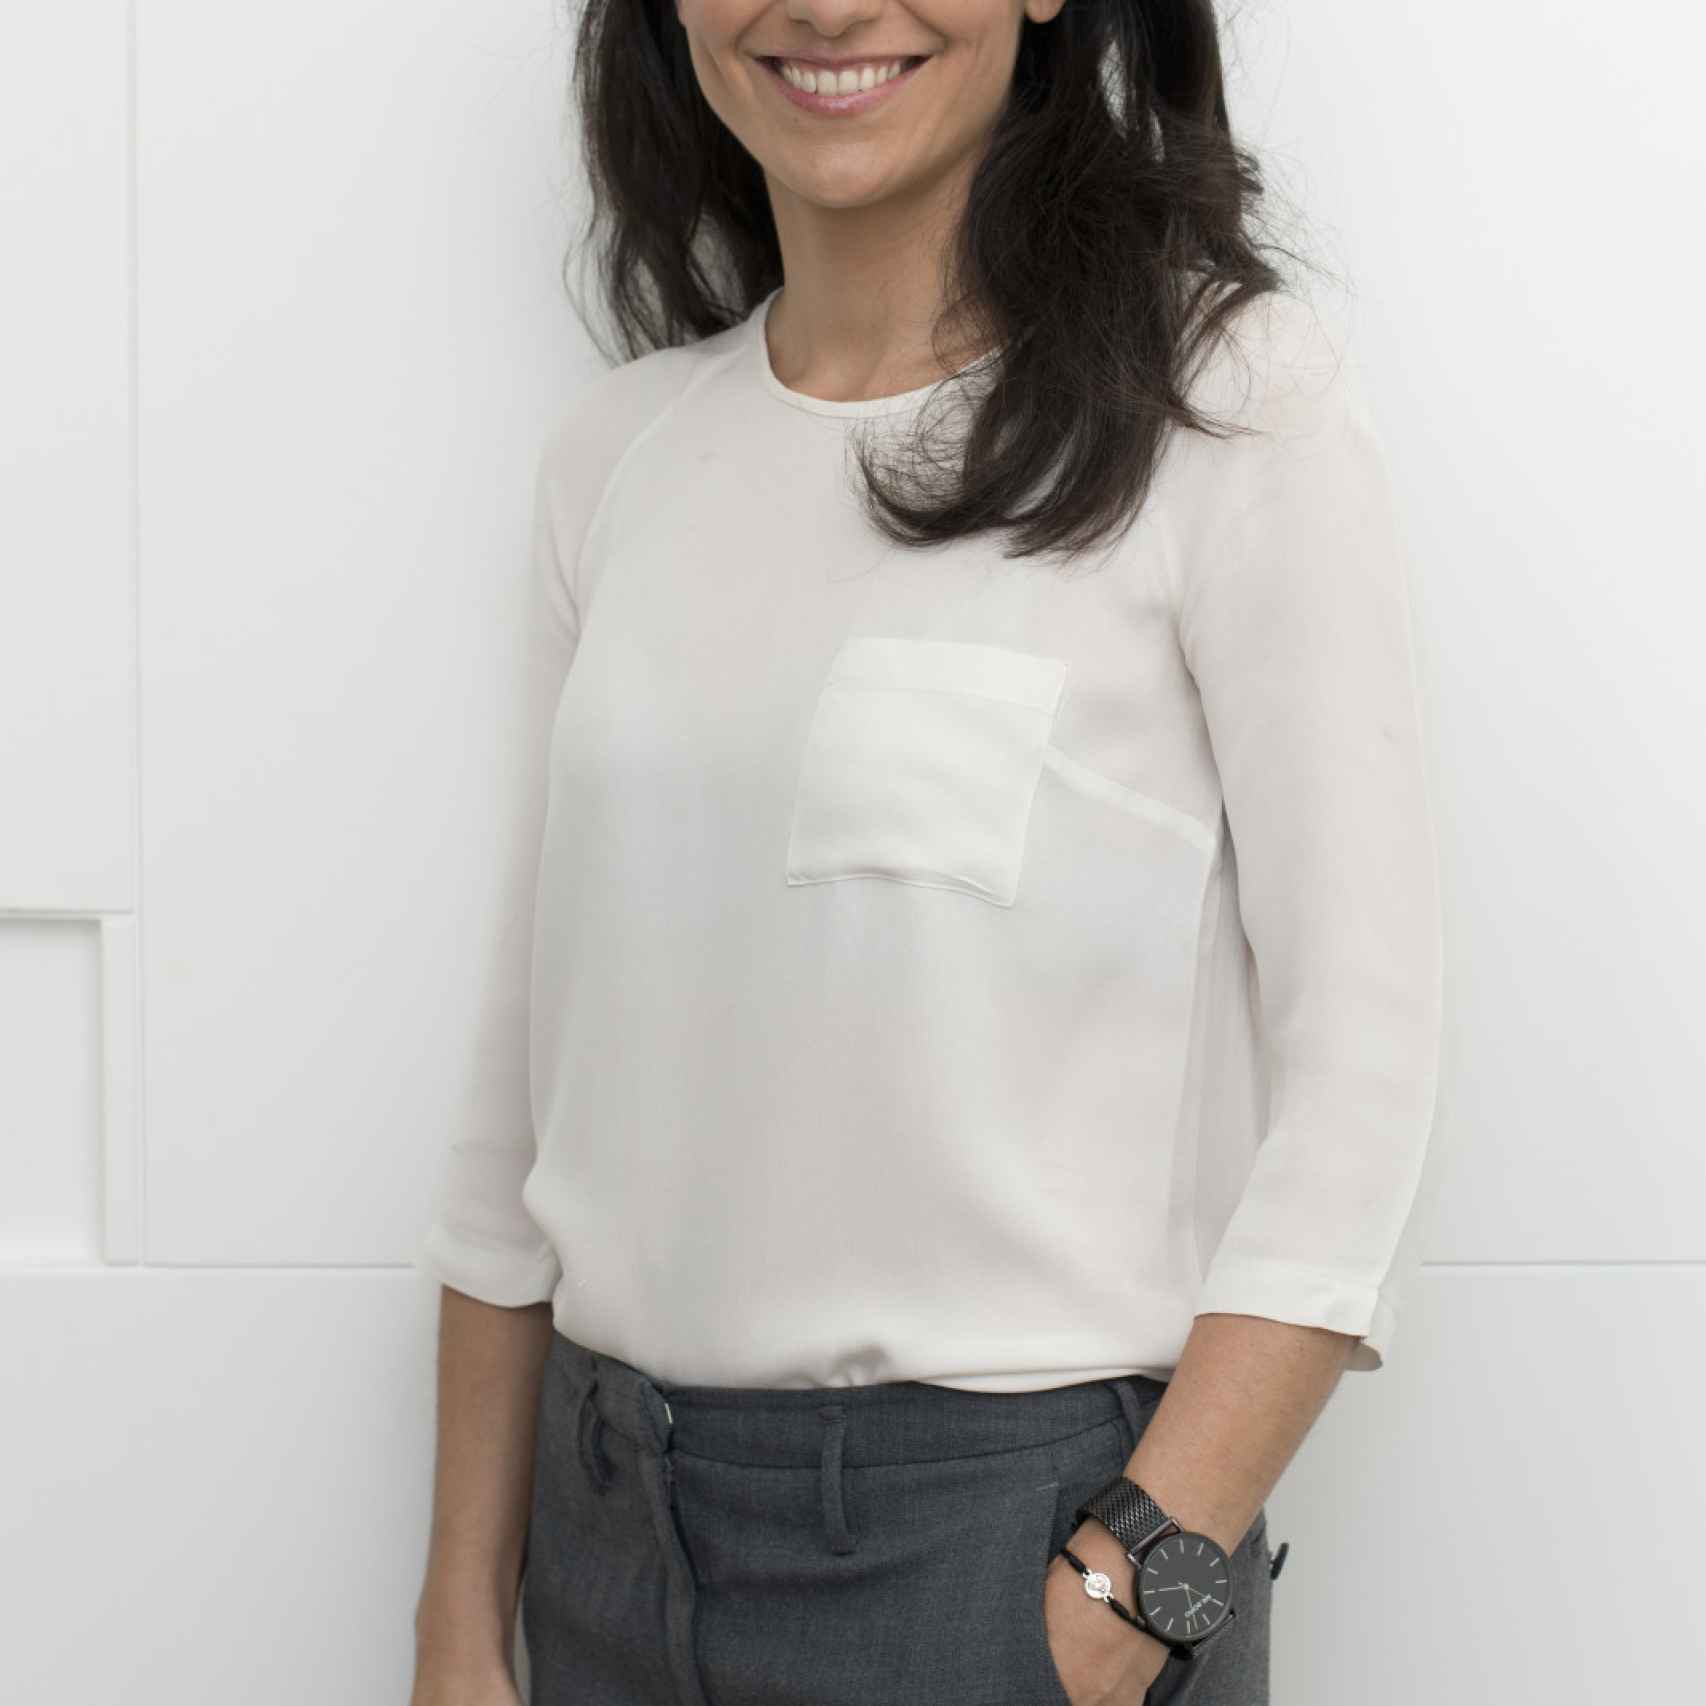 Rocio Monasterio, candidata de Vox por Madrid